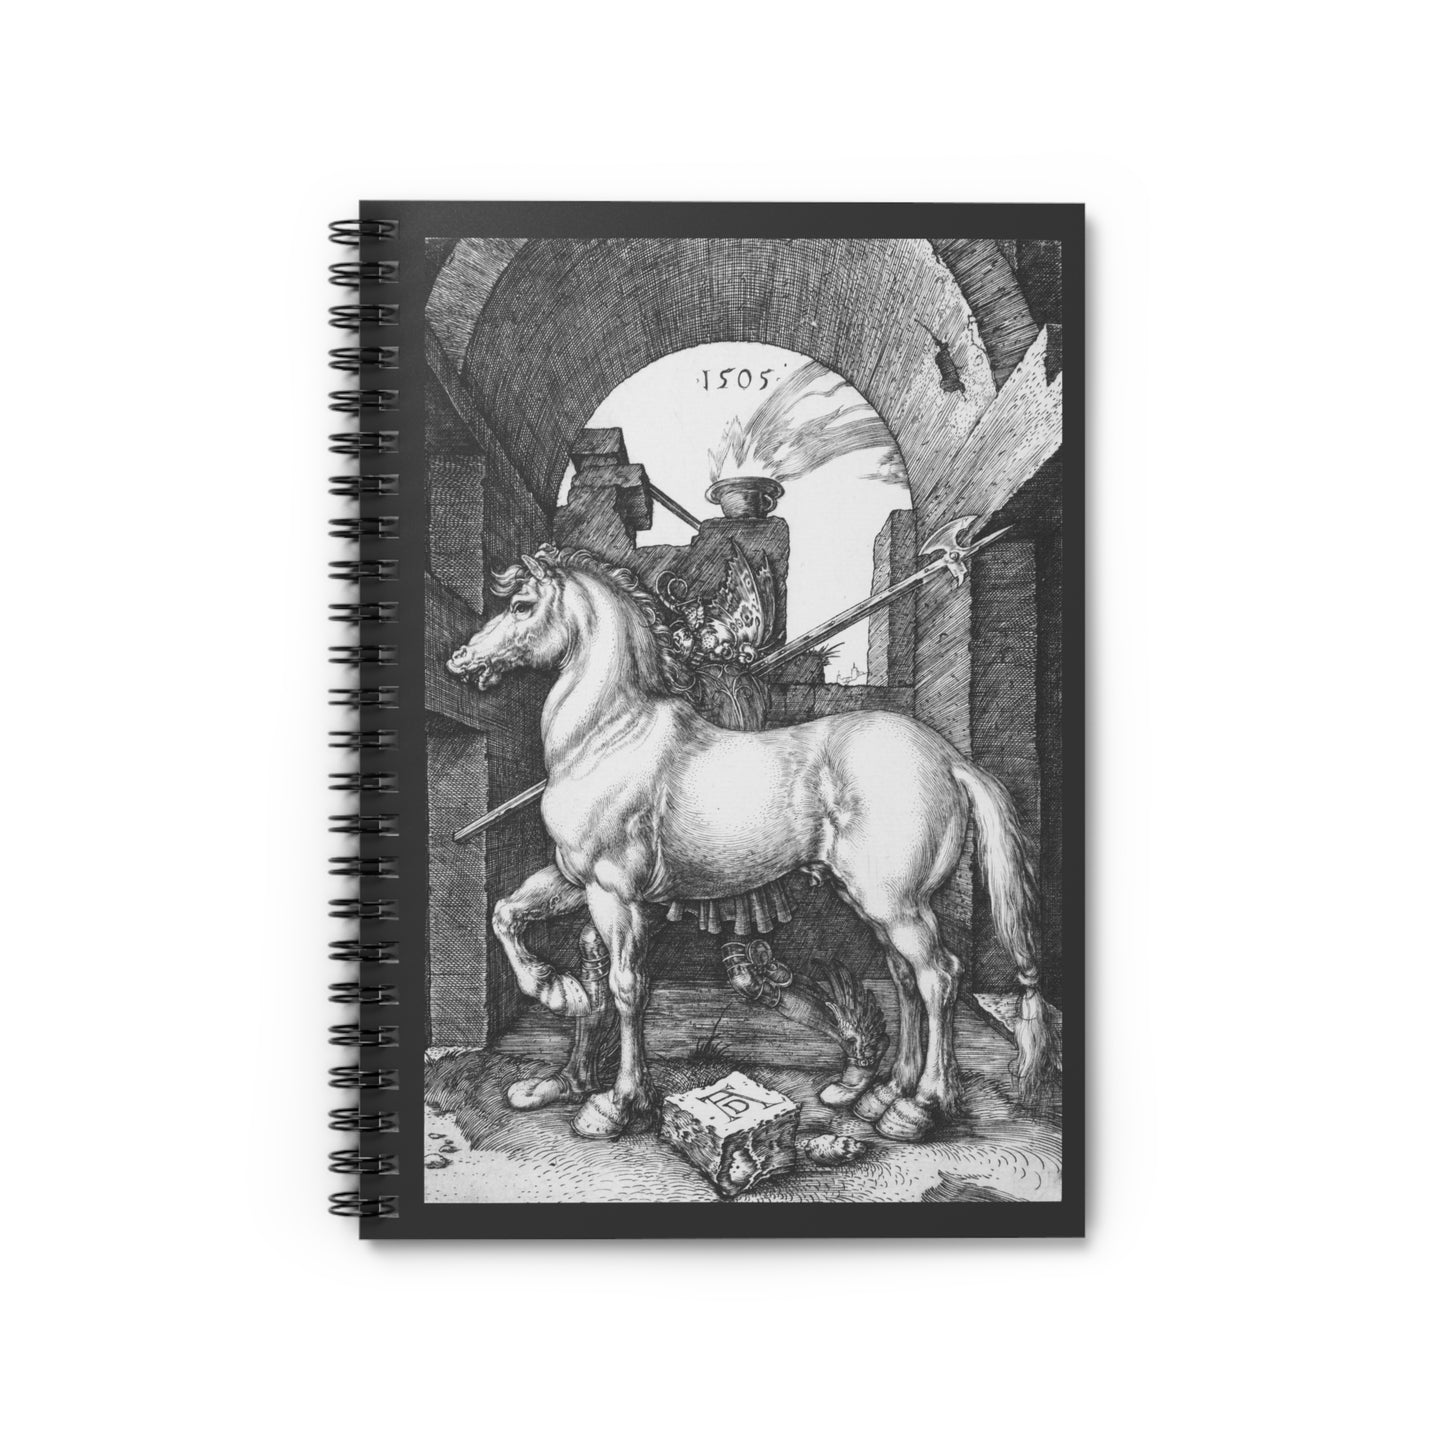 Albrecht Durer 1505 Engraving Spiral Notebook - Ruled Line